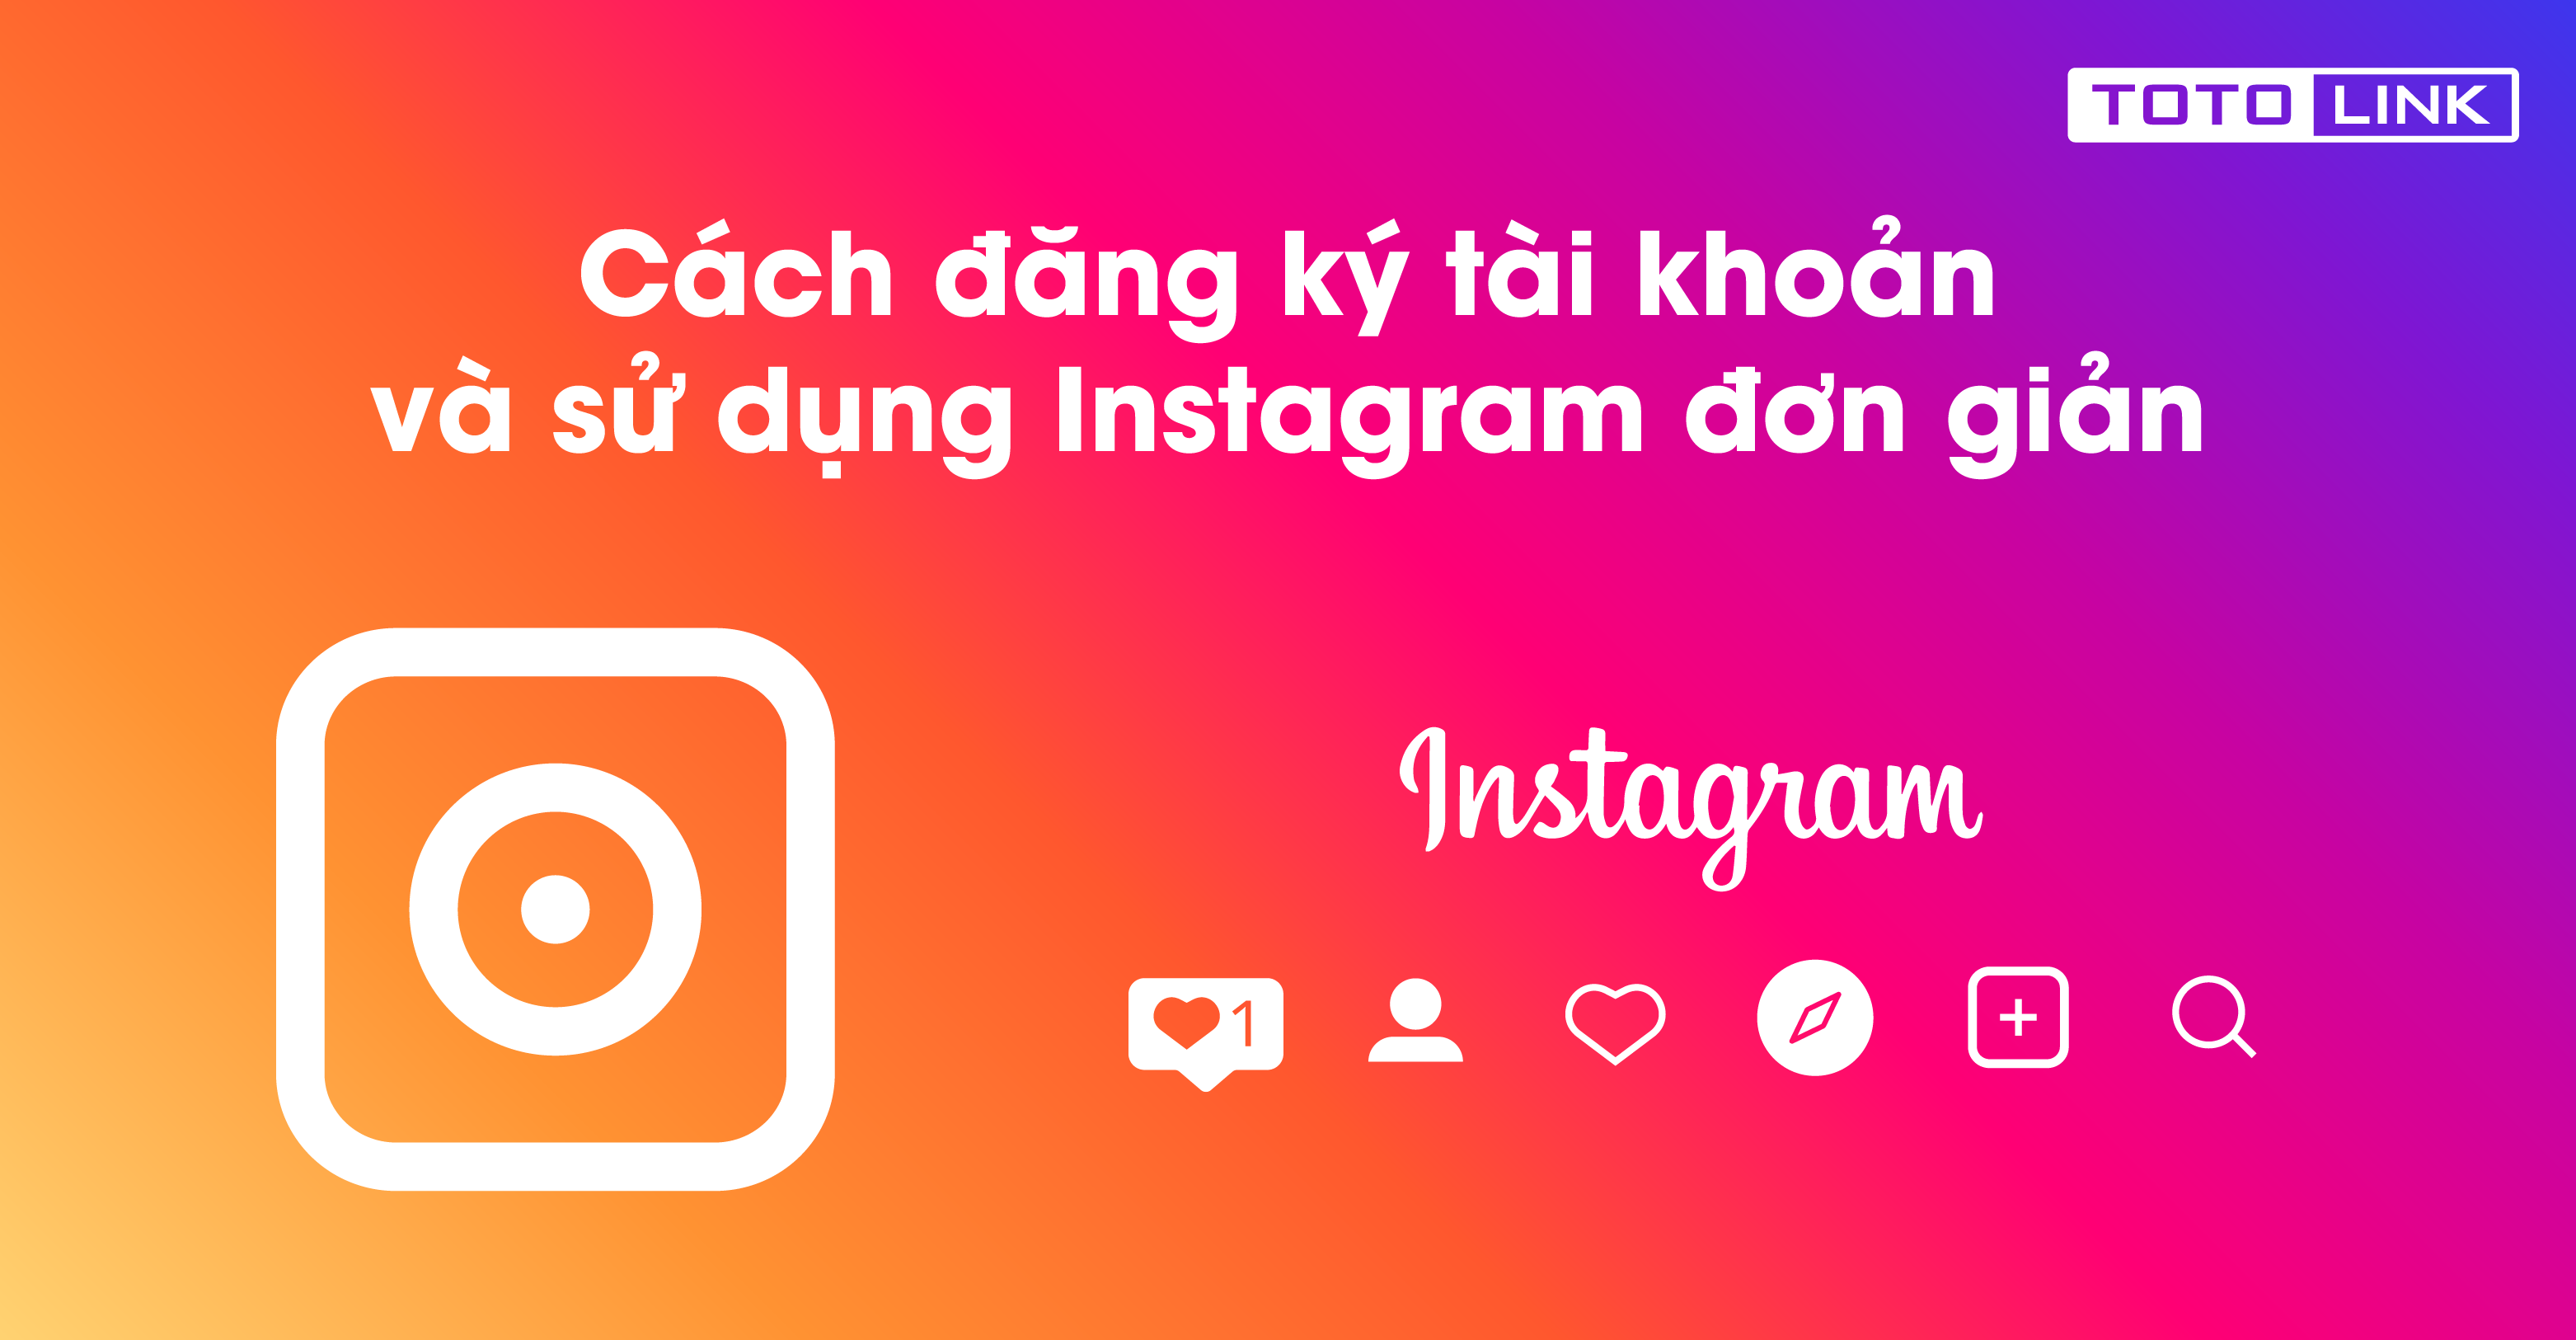 Instagram là gì? Khác gì với Facebook? Cách đăng ký tài khoản và sử dụng Instagram đơn giản